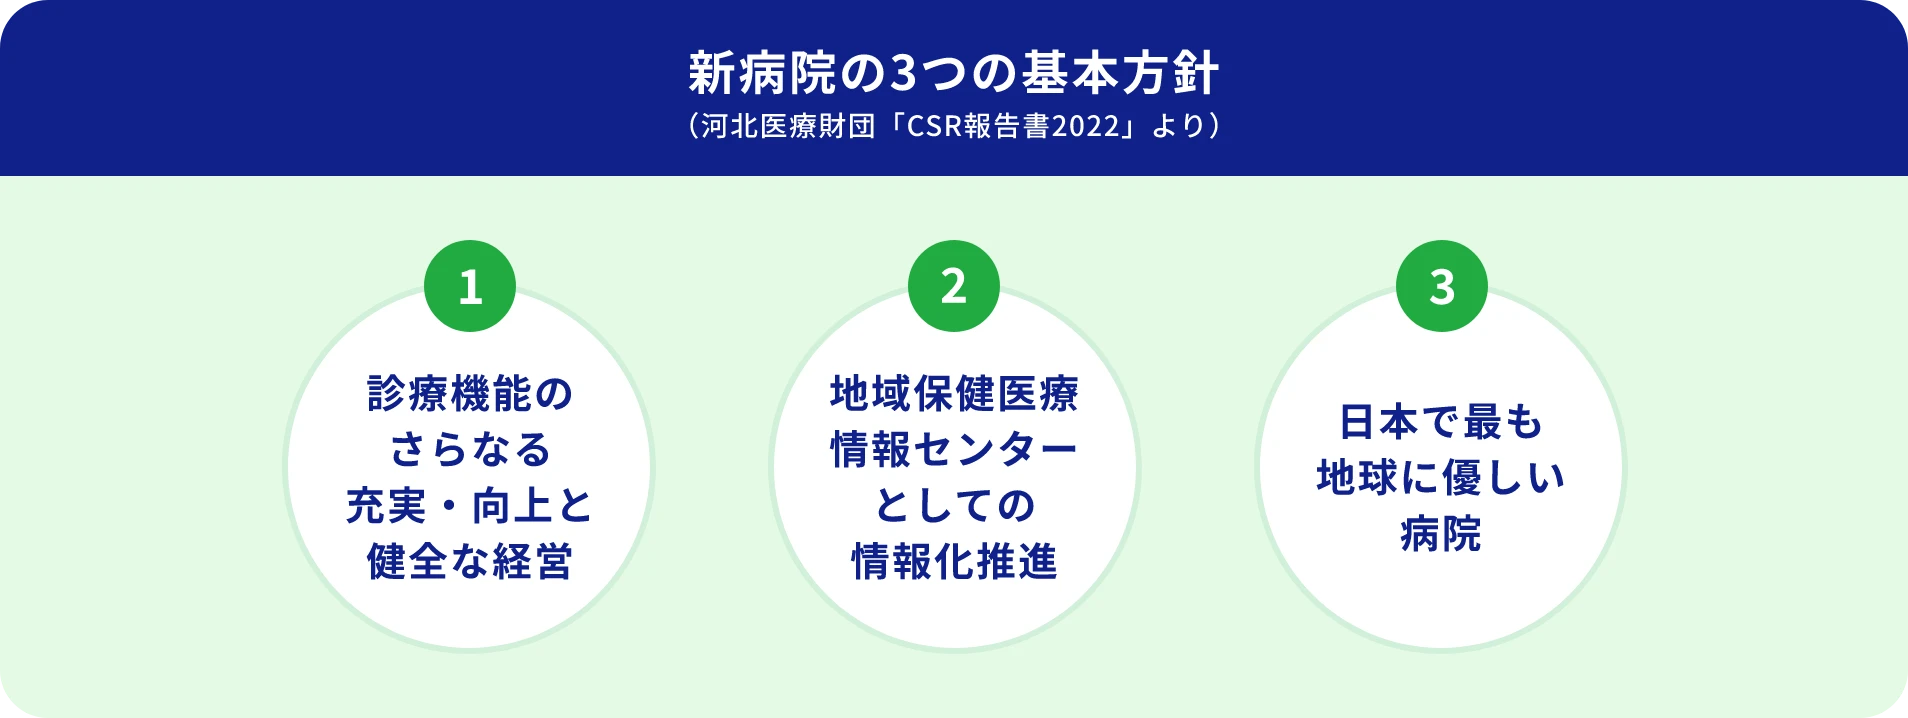 [新病院の3つの基本方針（河北医療財団「CSR報告書2022」より）] ①診療機能のさらなる充実・向上と健全な経営 ②地域保健医療情報センターとしての情報化推進 ③日本で最も地球に優しい病院